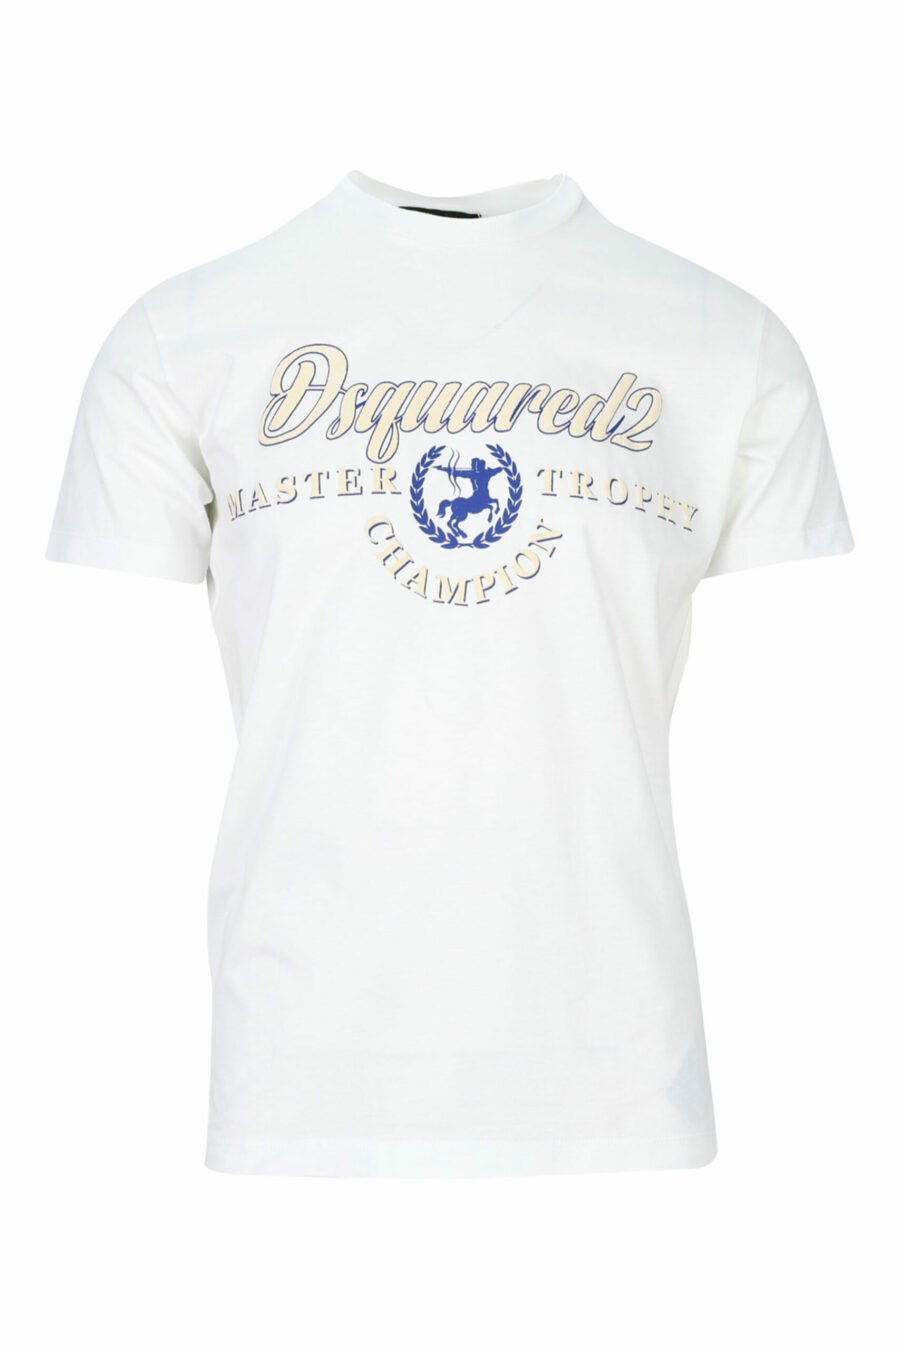 Weißes T-Shirt mit weißem und blauem Maxilogo mit Schild - 8054148159665 skaliert